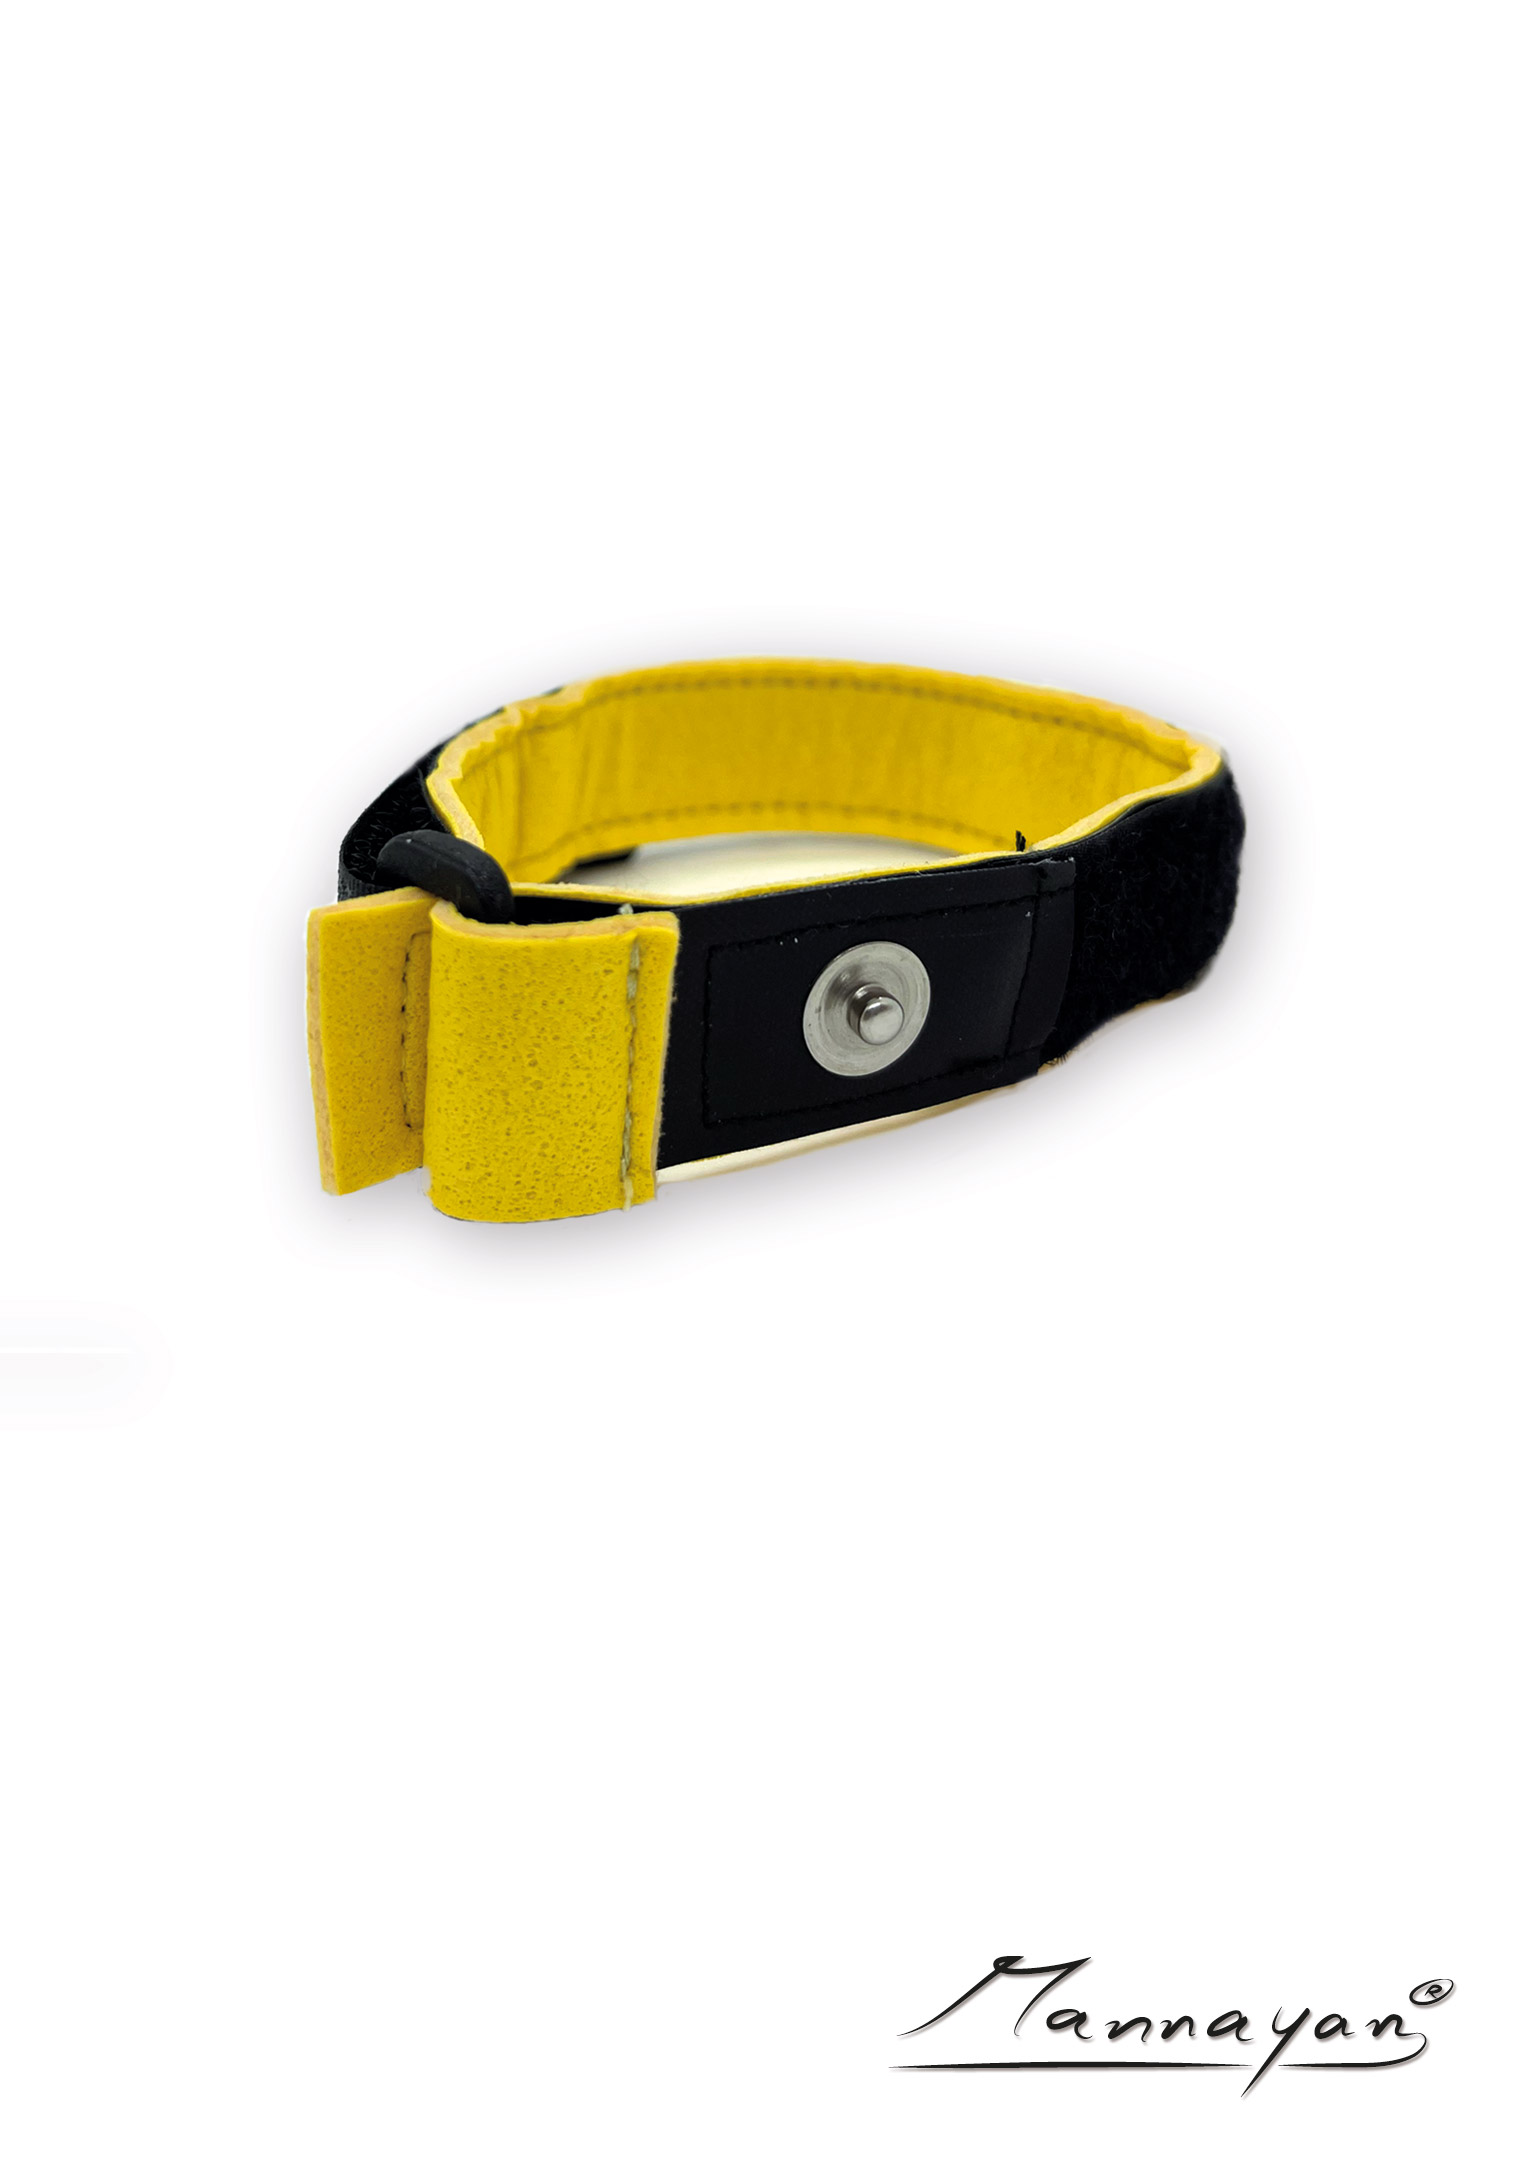 Armband met spons - geel 